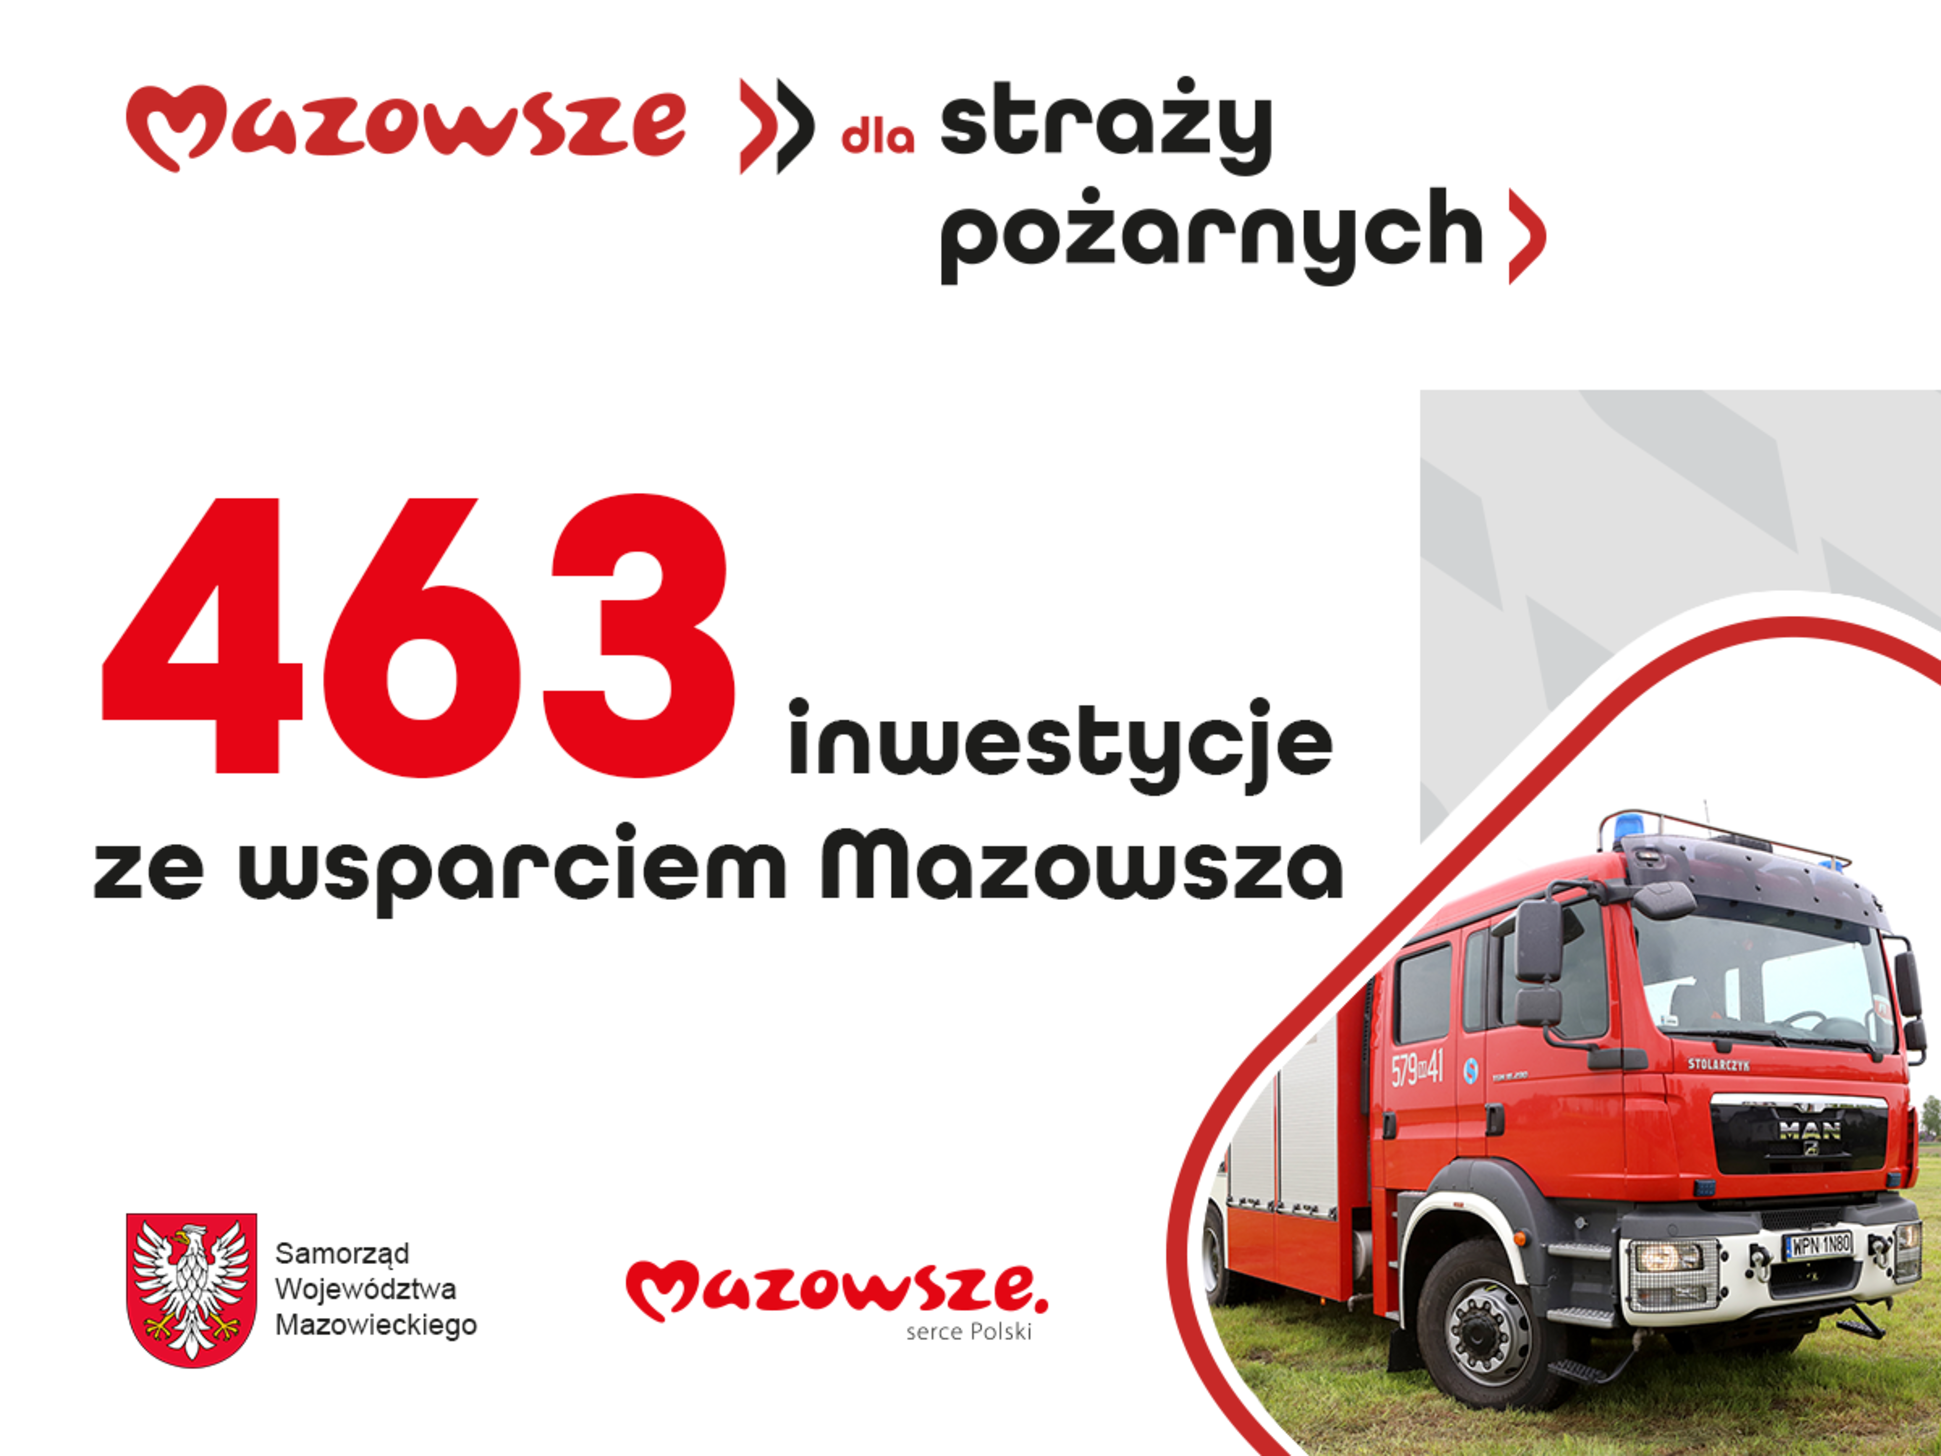 Napis: "463 inwestycje ze wsparciem Mazowsza"